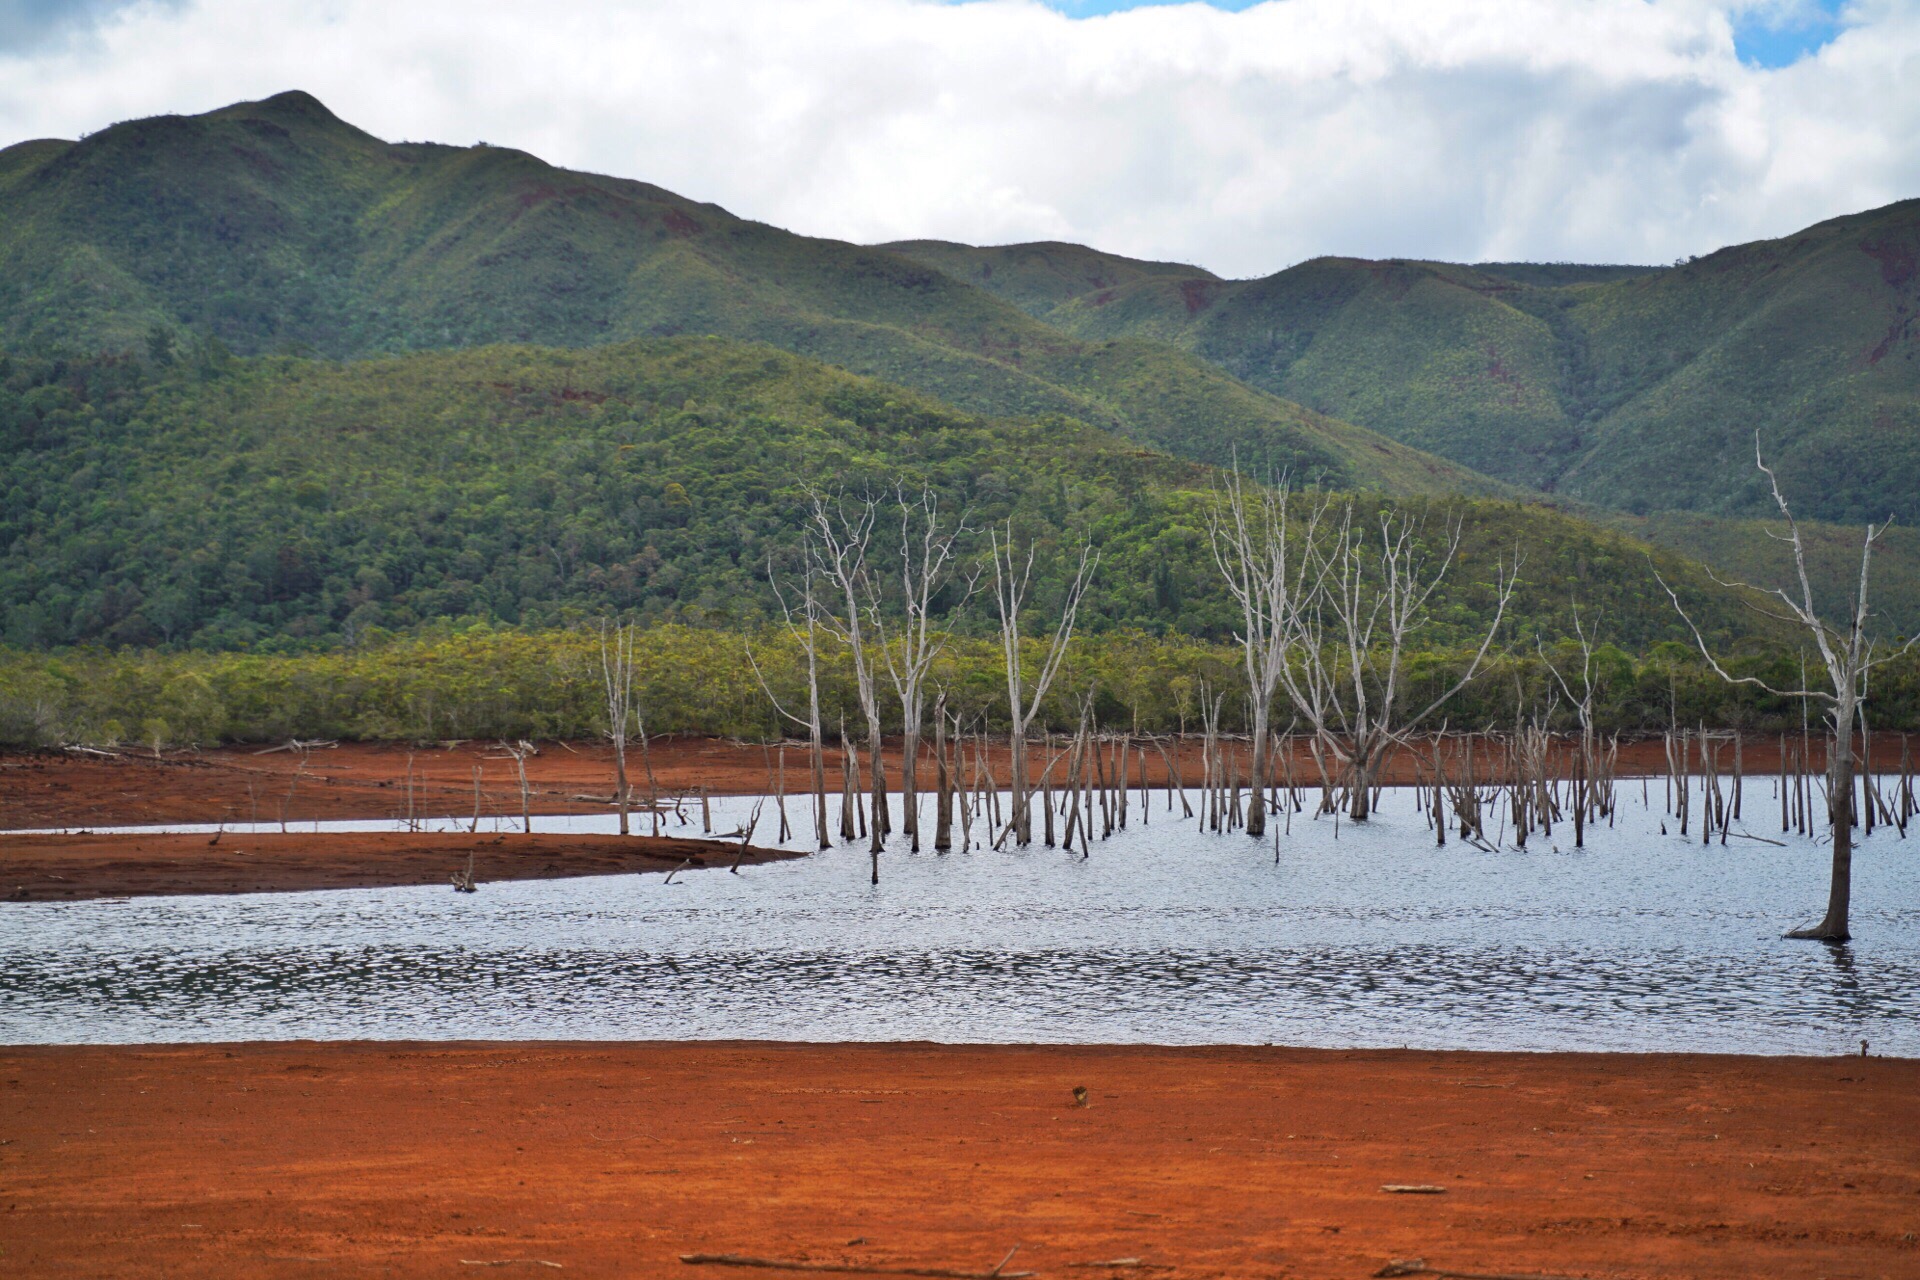 新喀里多尼亚的蓝河国家公园，位于新喀主岛的东北方向，一片红土地，湖中枯死的树林已有几十年的时间。来这